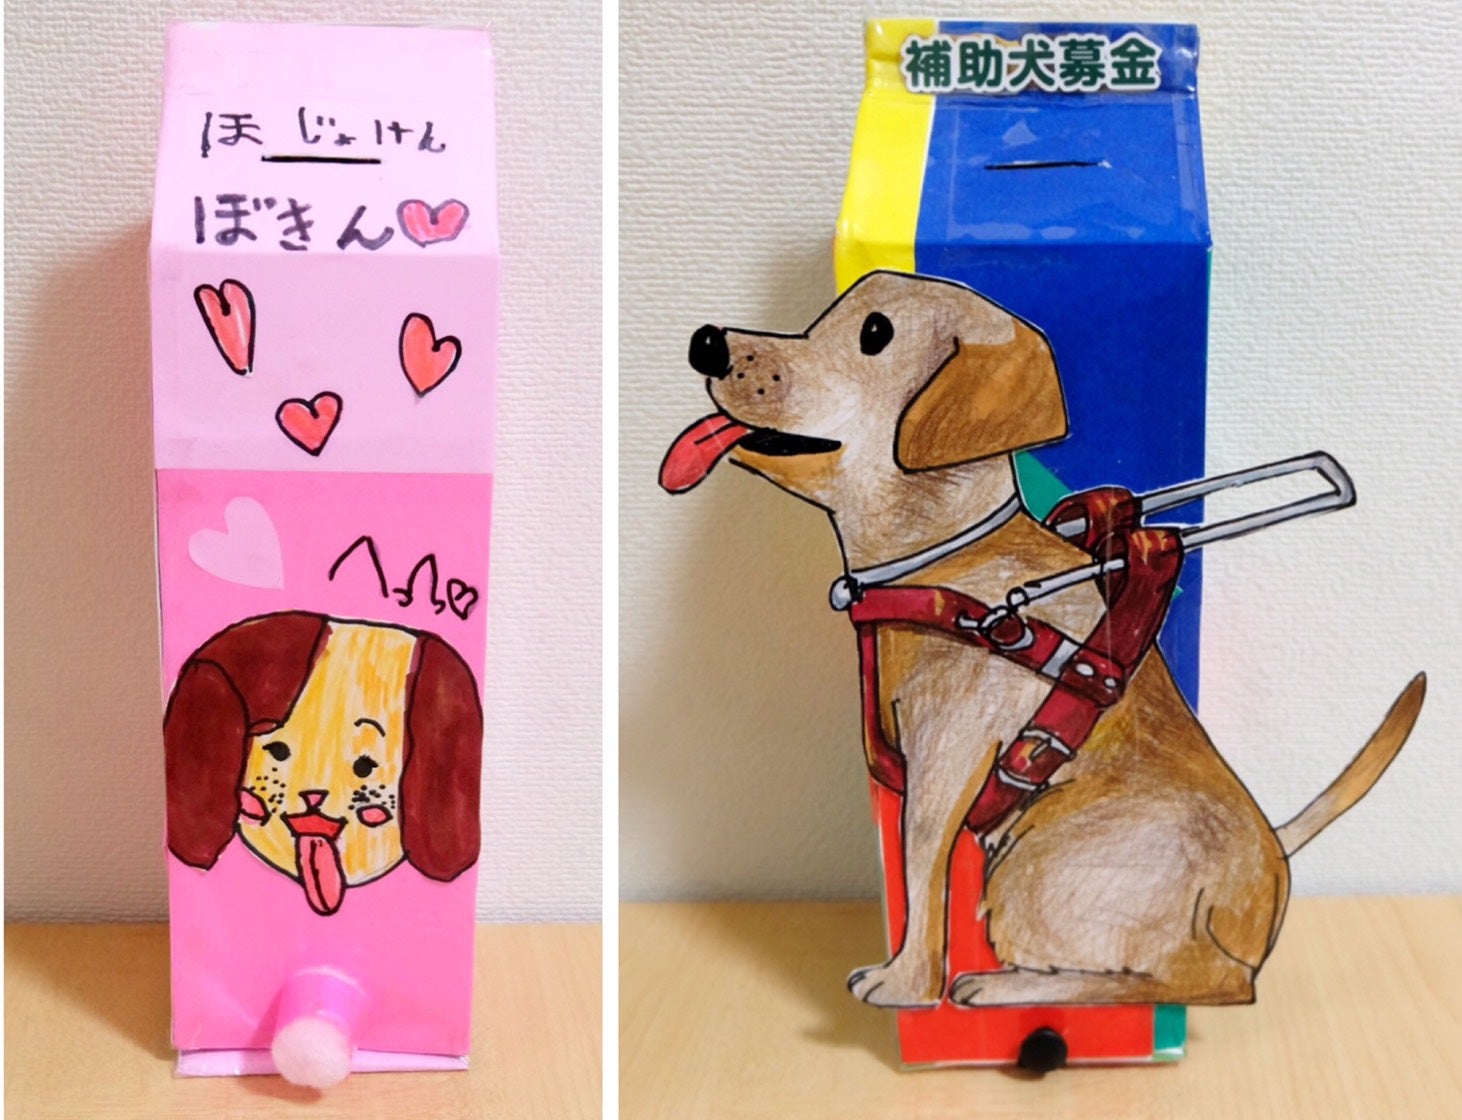 補助犬募金キャンペーン 手作り募金箱コンテスト マミーマートグループ リビング埼玉web